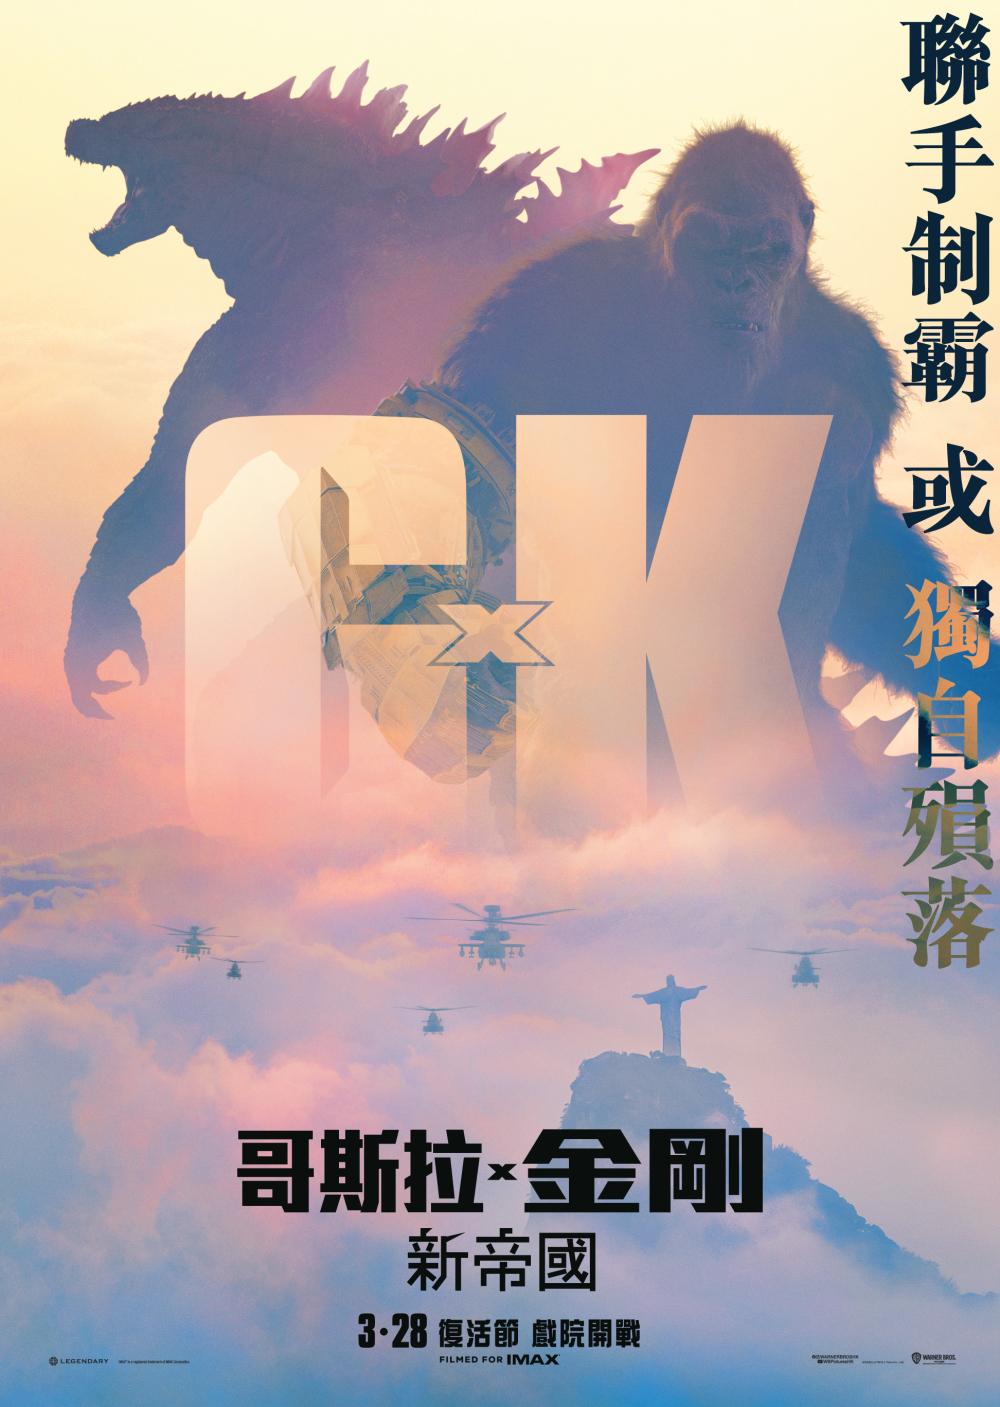 Hong Kong Teaser Poster